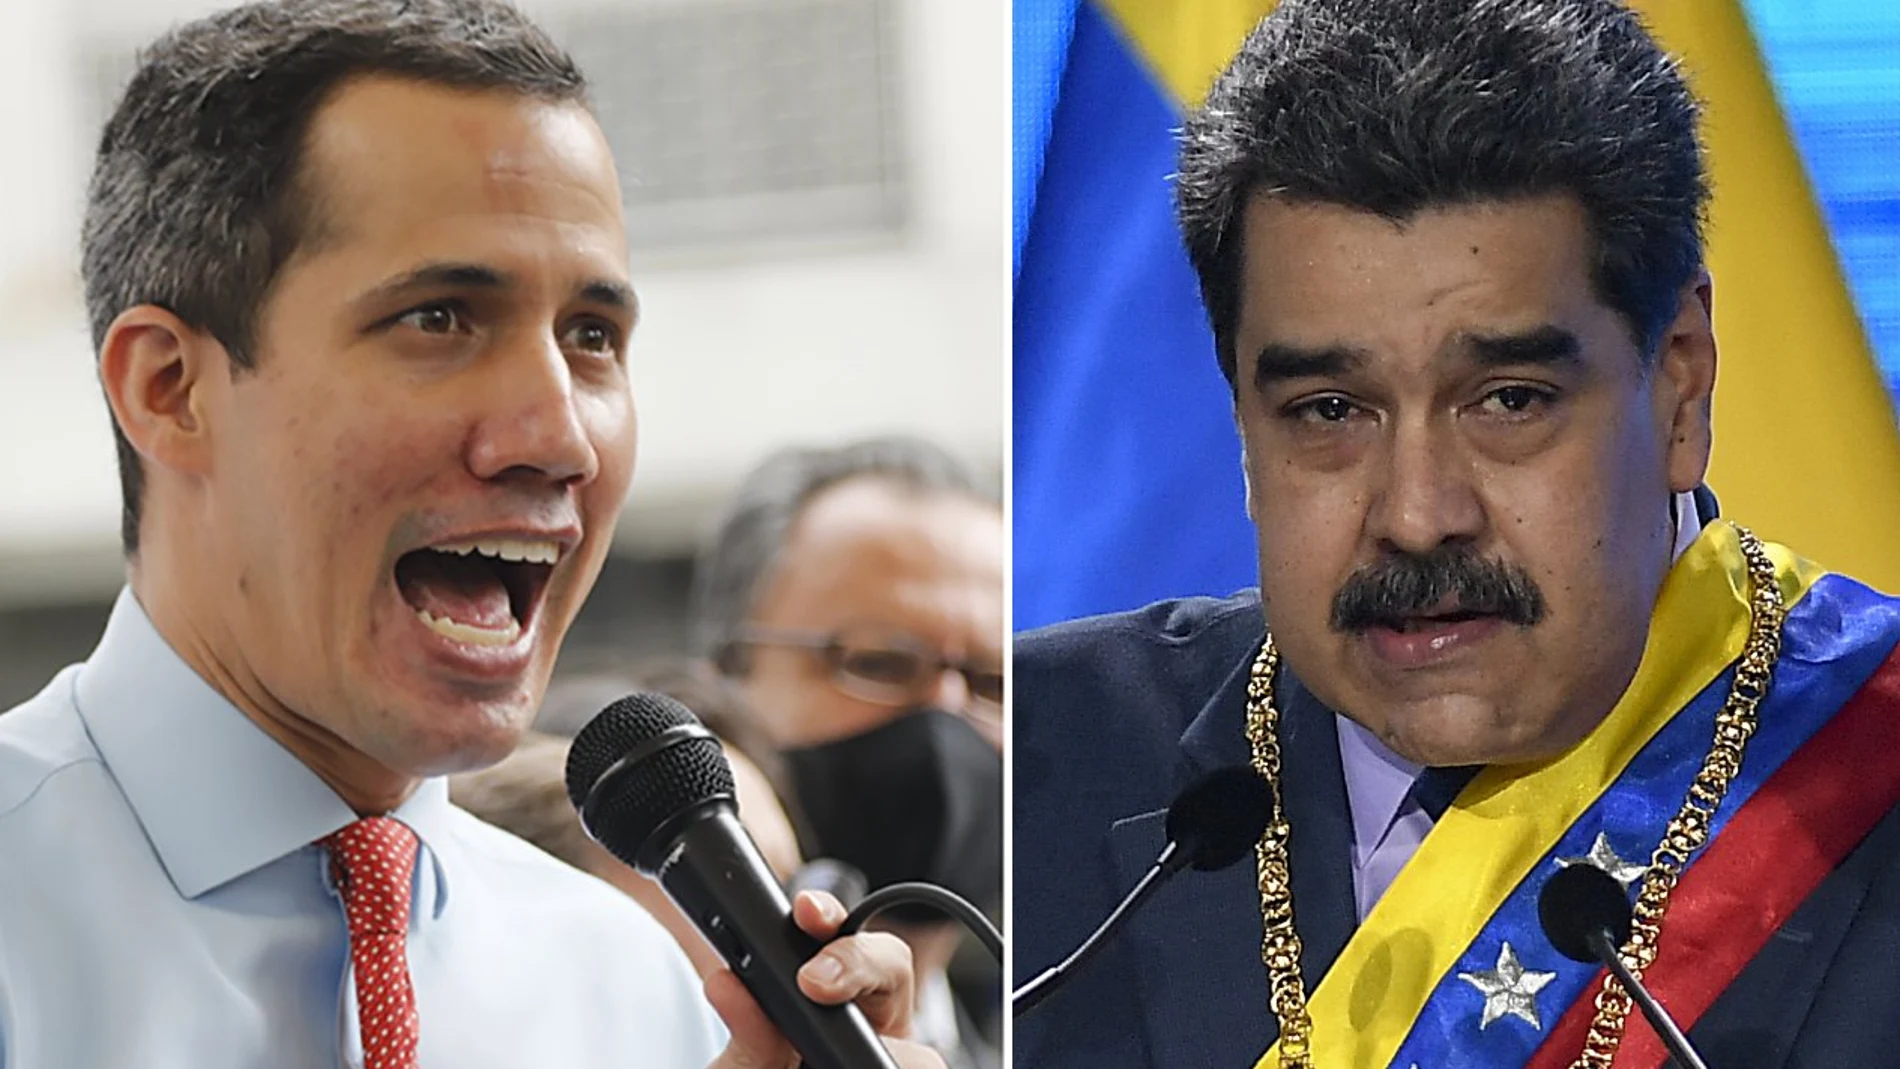 ¿Quién se quedará con el oro venezolano? ¿Juan Guaido o Nicolás Maduro?